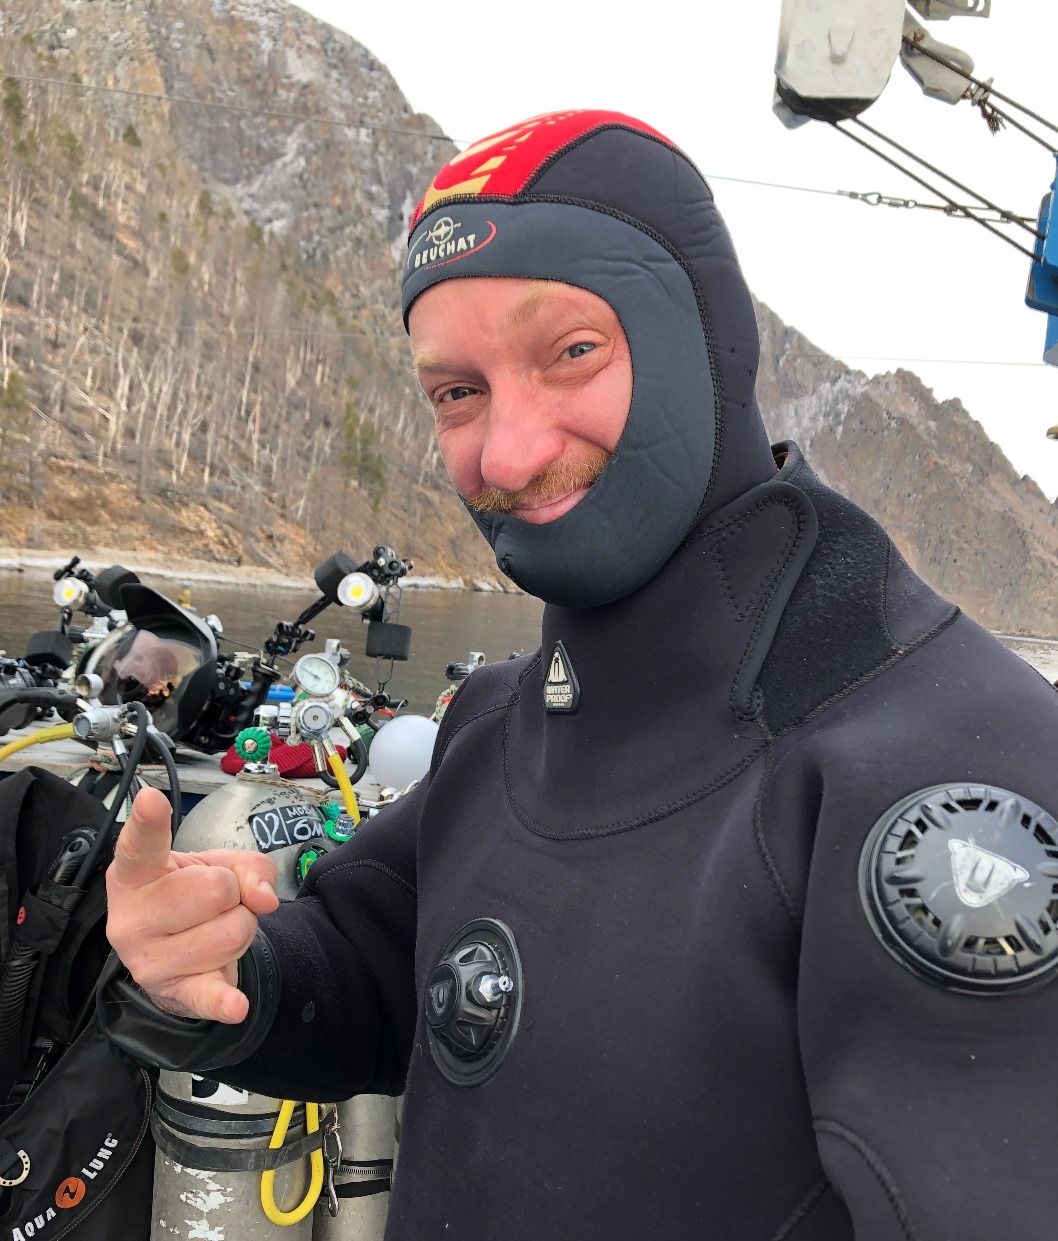 Курс Dry Suit, Ice Diver, Deep, Sidemount в Иркутске на Байкале